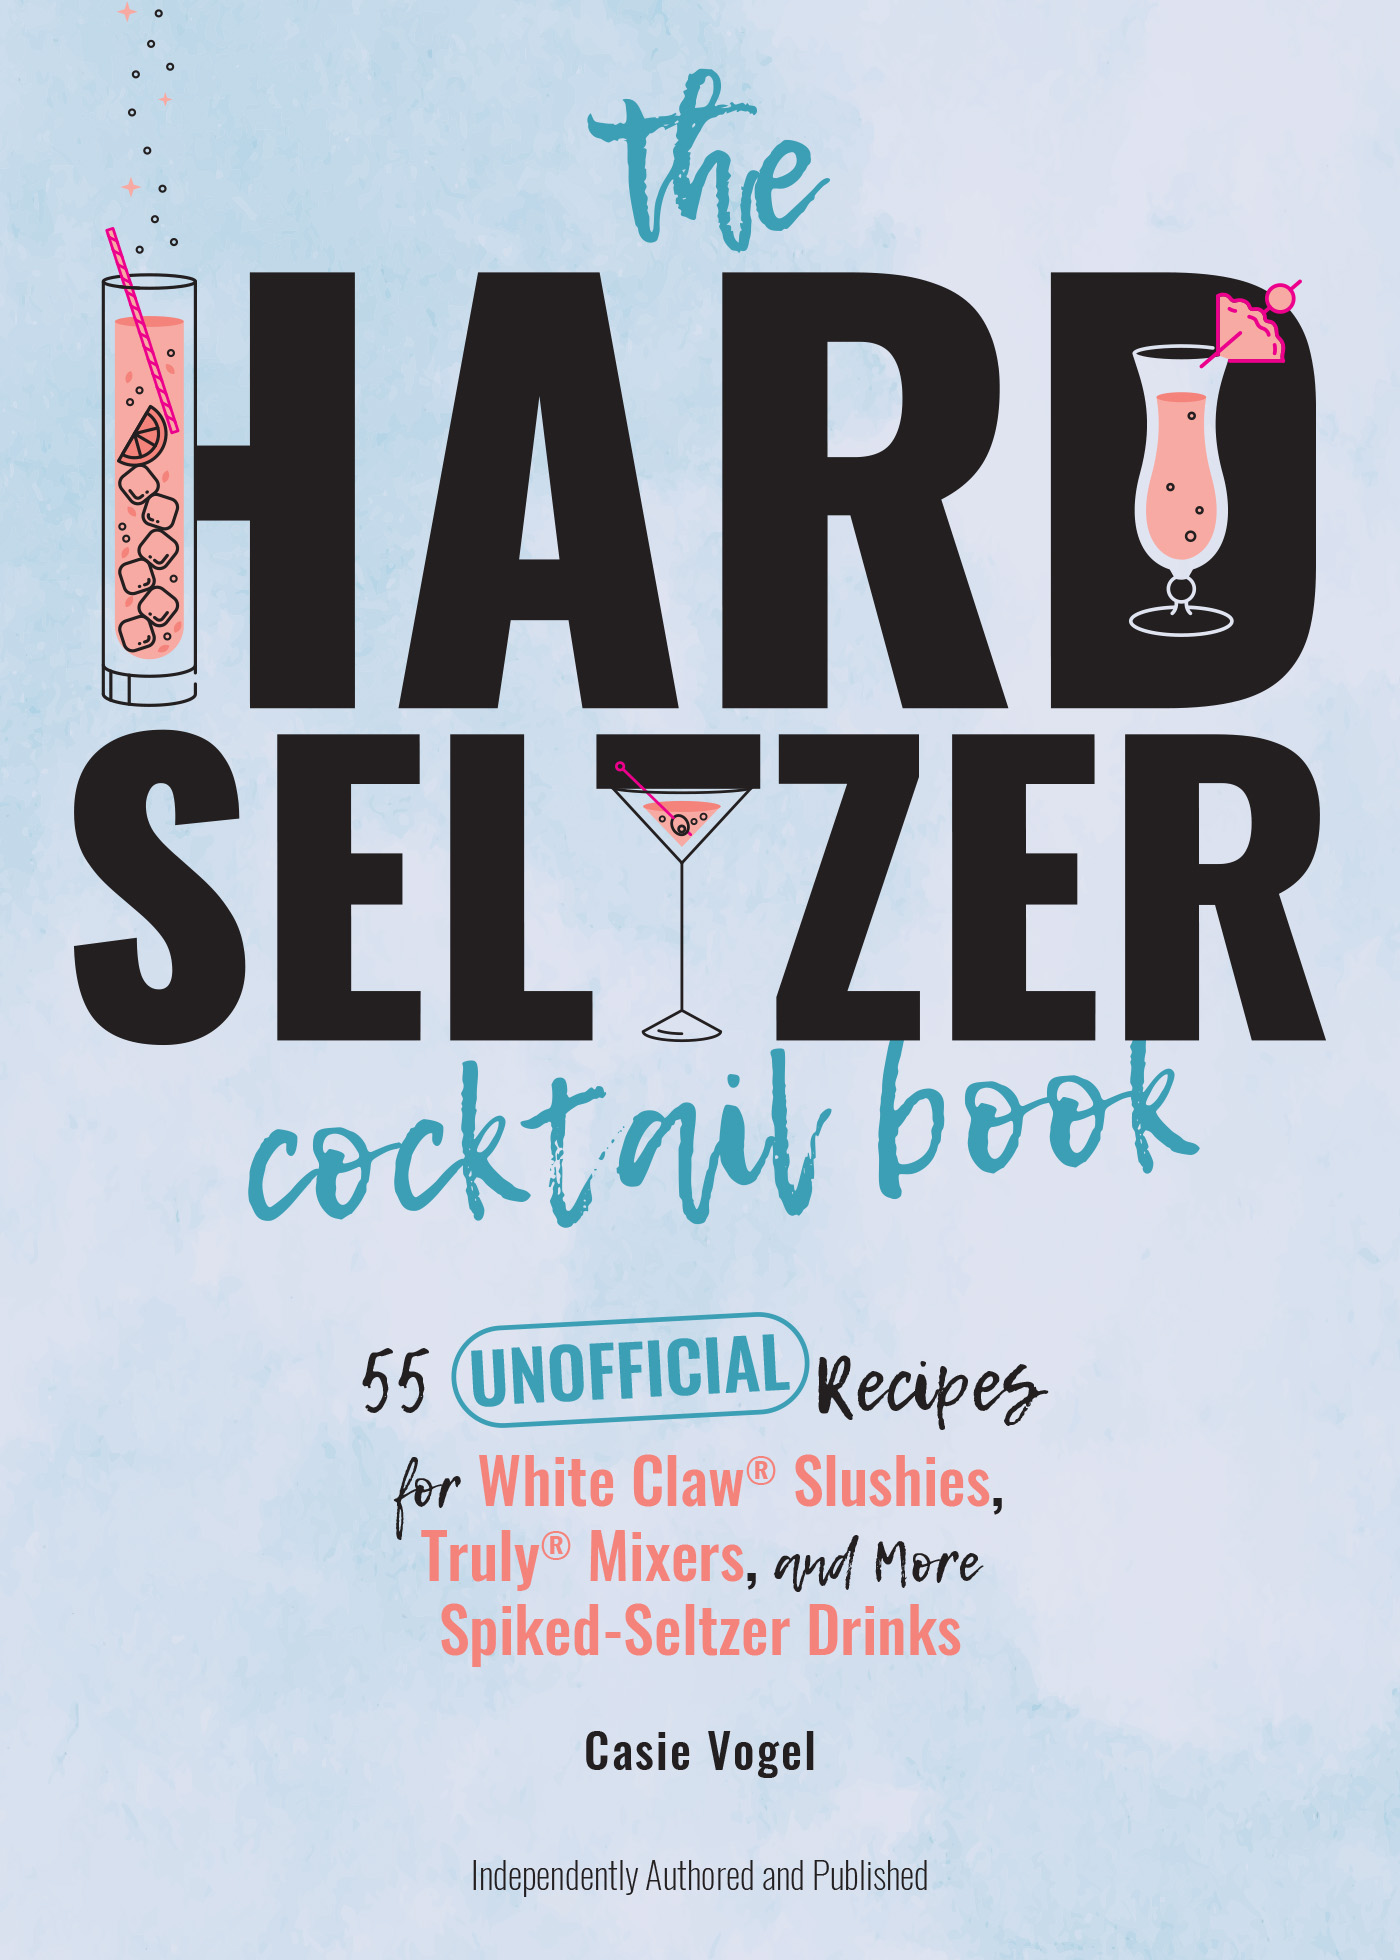 Hard_Seltzer_Cocktails-front.indd